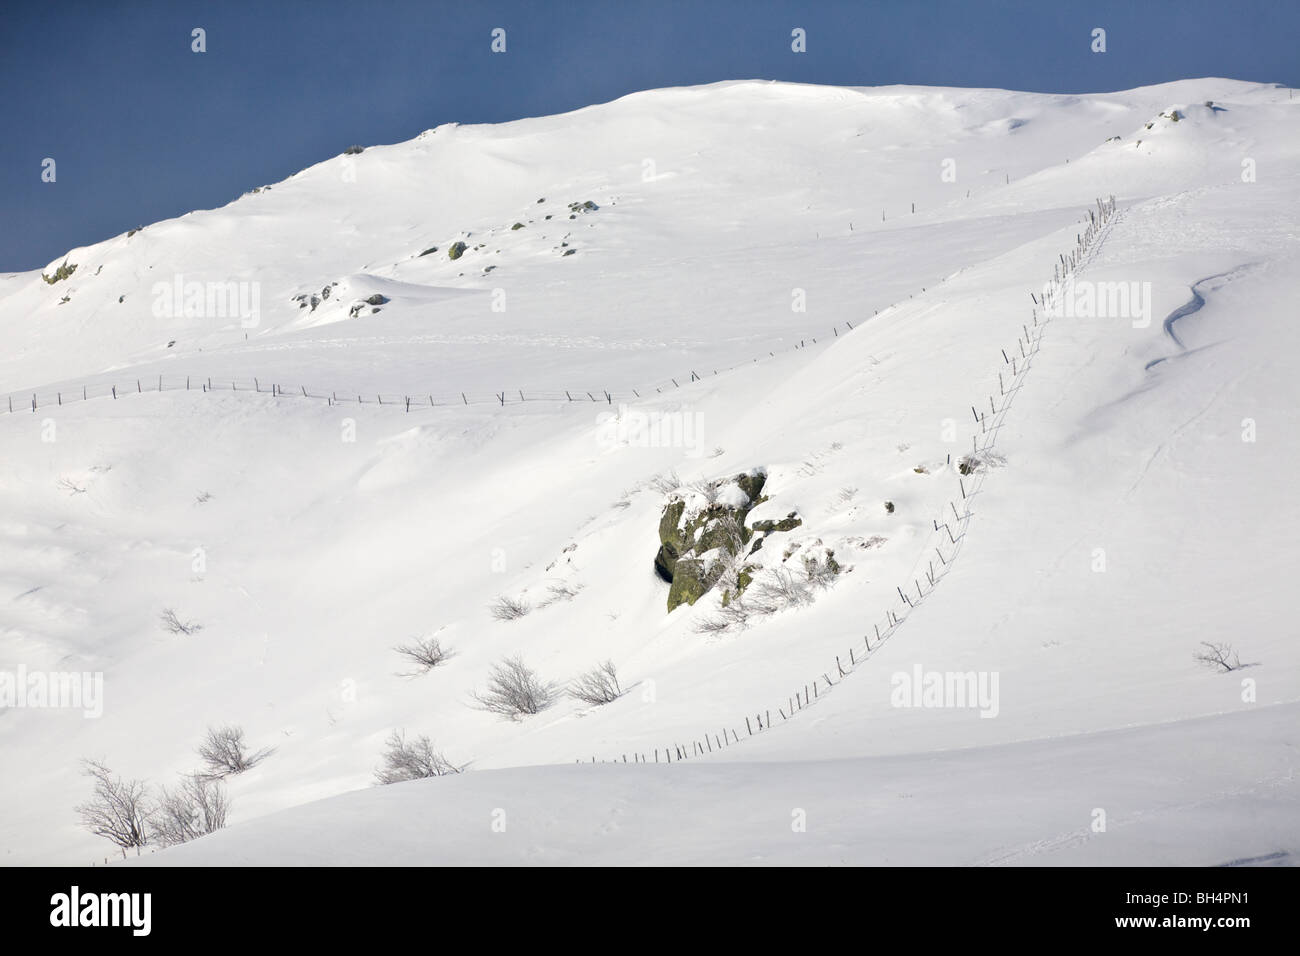 En hiver, un paysage de neige Auvergne (Cirque du salé au printemps). Paysage d'Auvergne, en hiver (Cirque de la fontaine salée). Banque D'Images